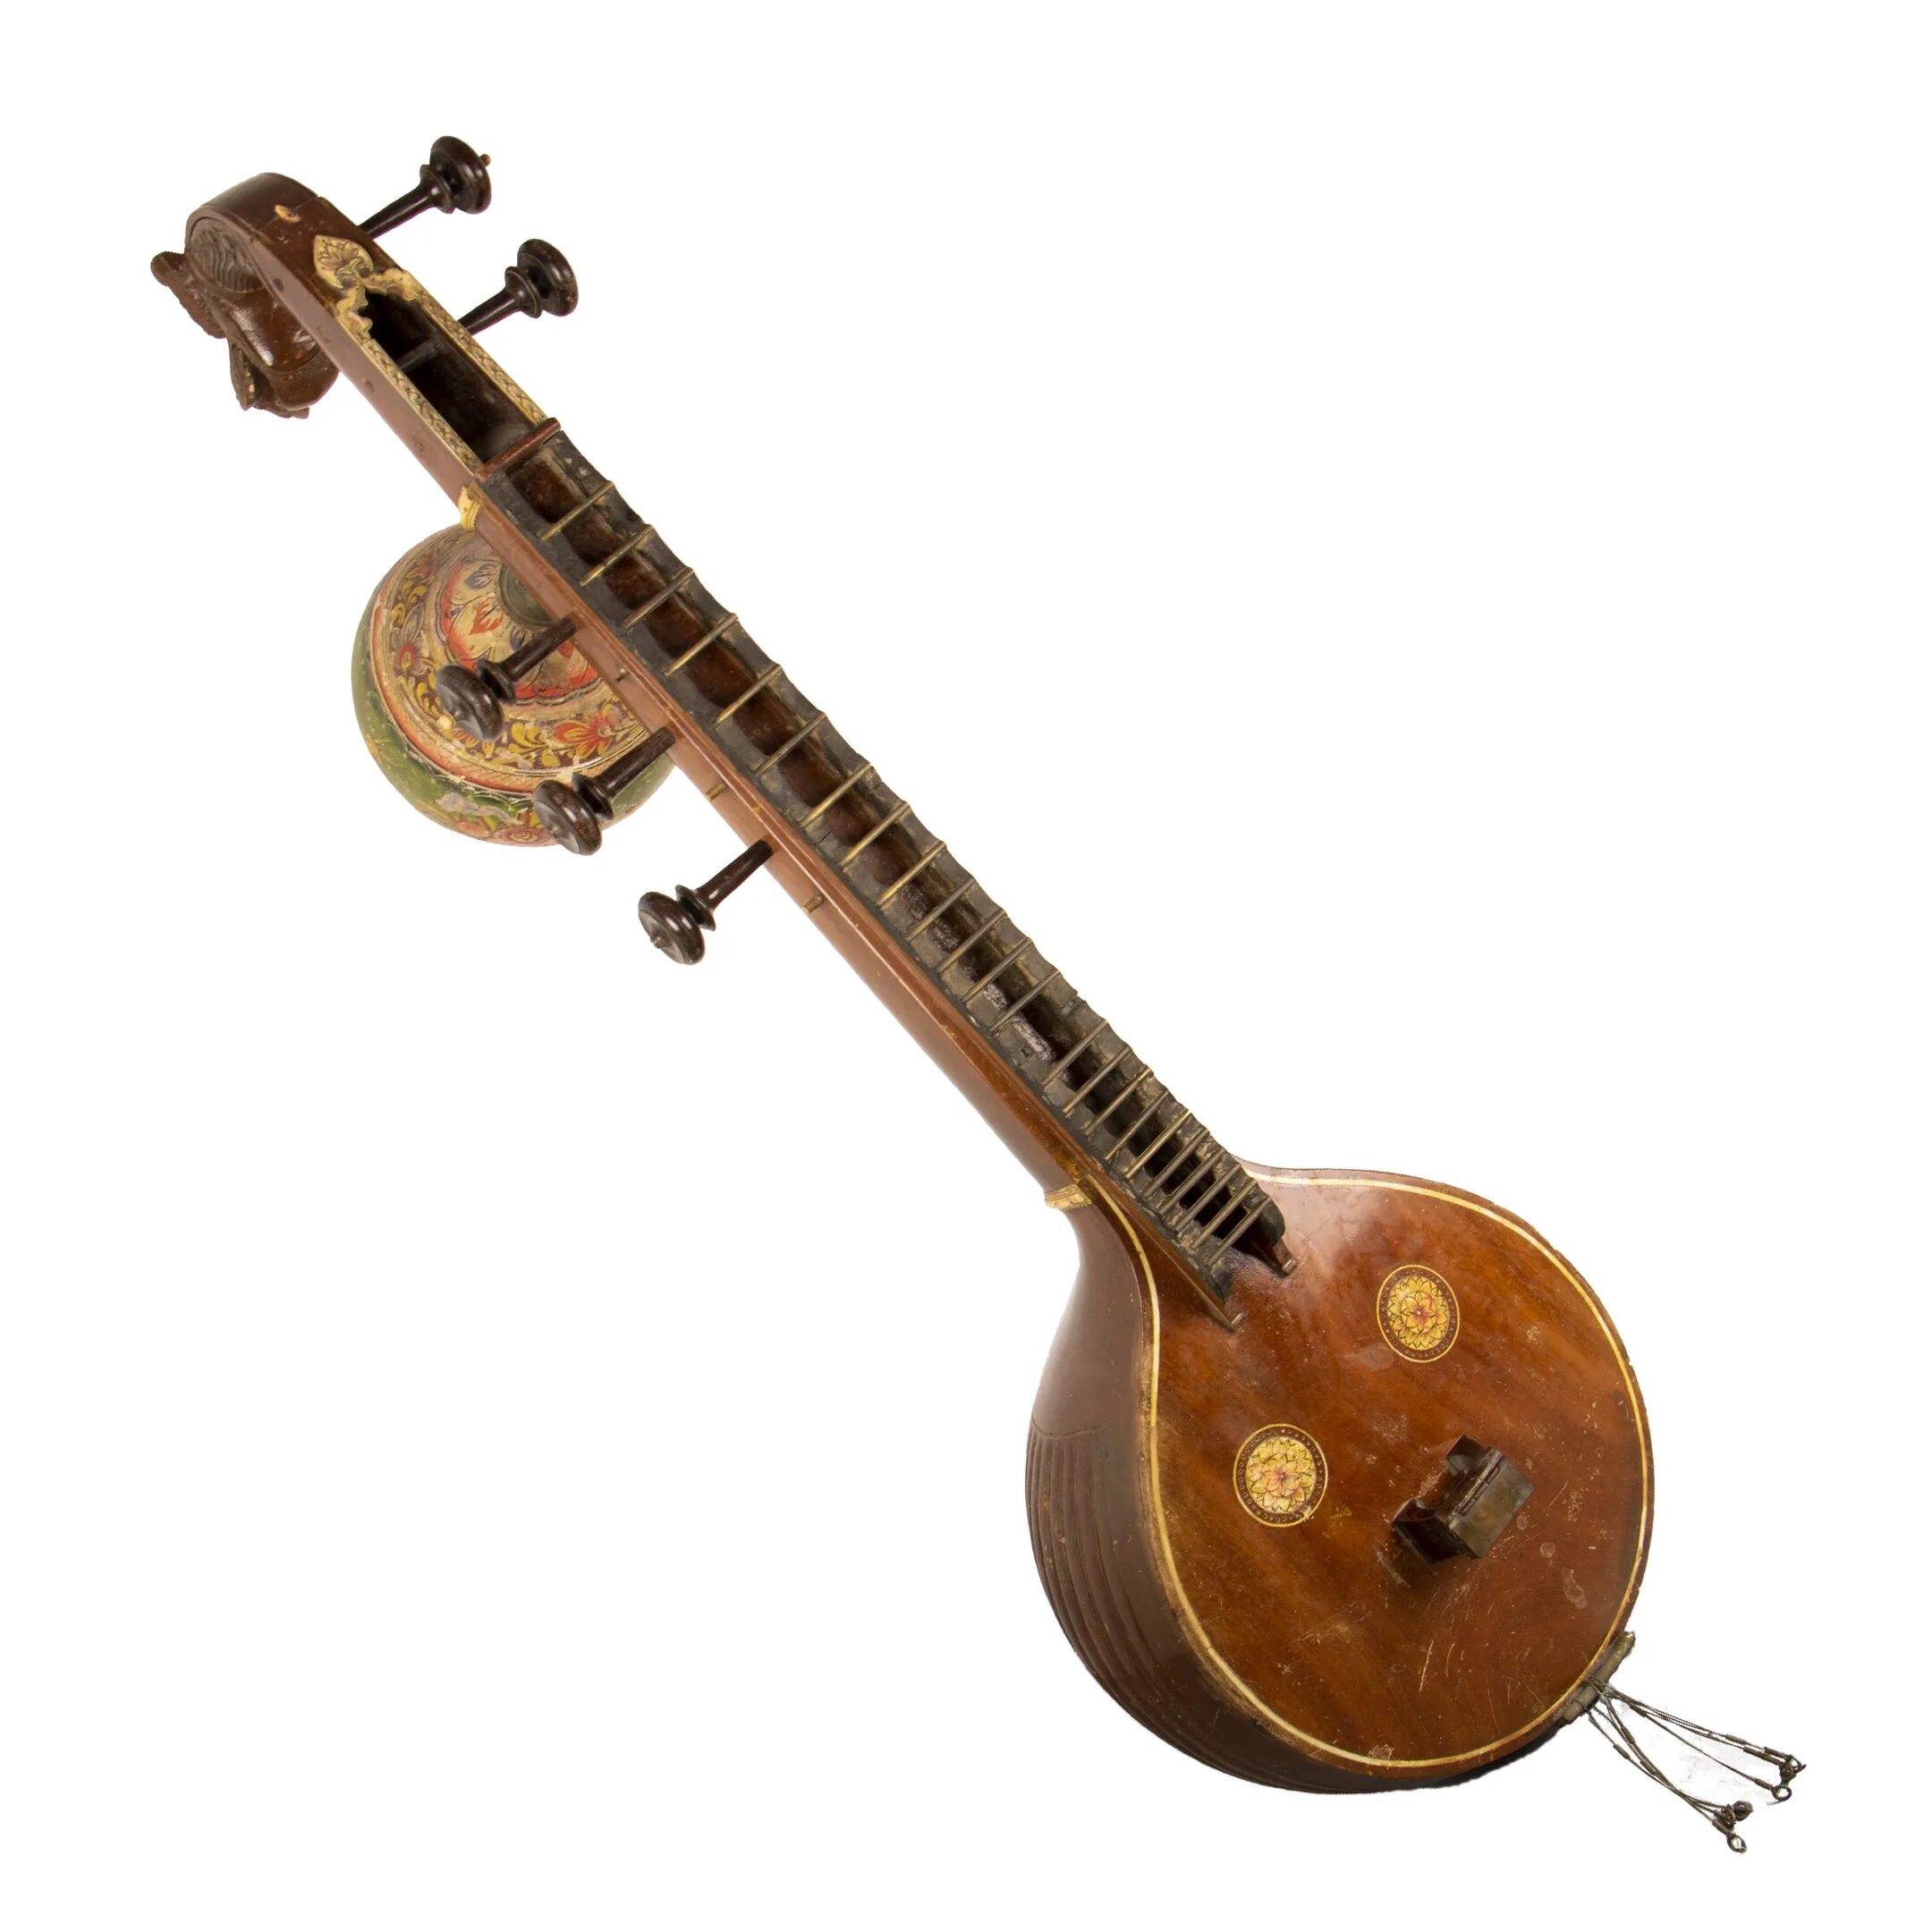 Немецкий струнный инструмент похожий. Индийский национальный инструмент ситар. Ситар музыкальный инструмент. Струнный инструмент ситар. Ситар древний музыкальный инструмент.